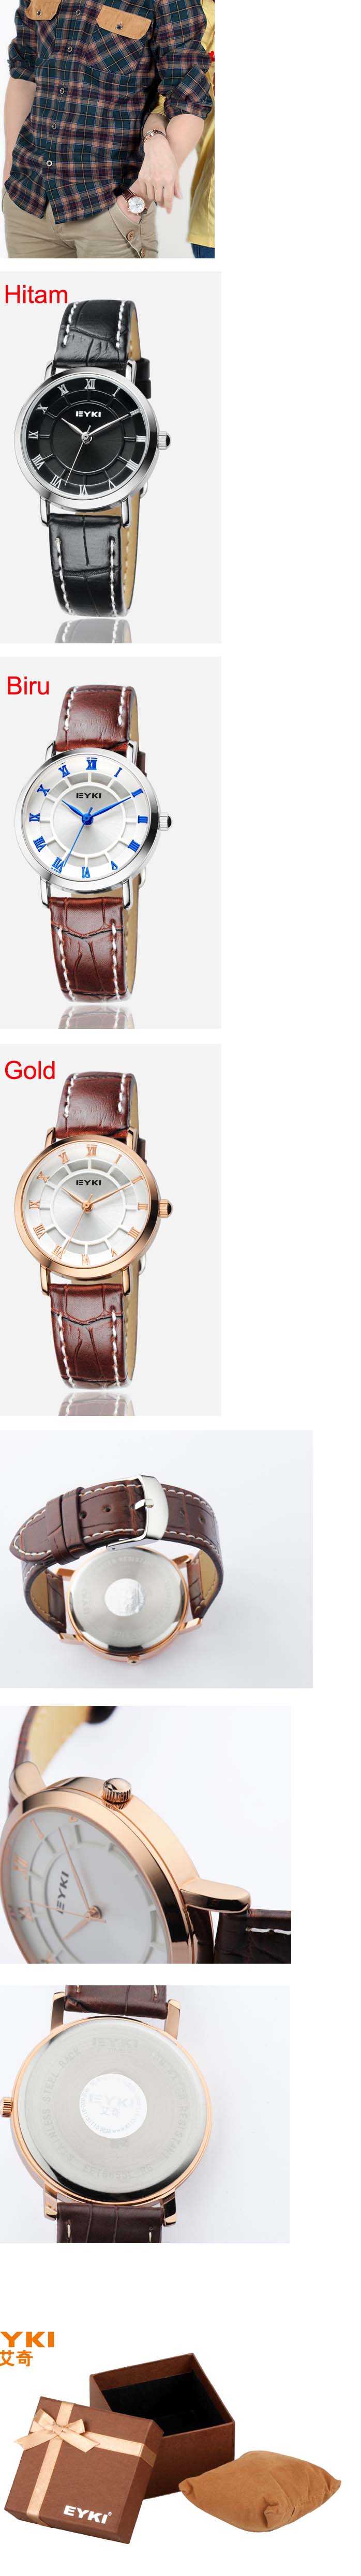 jual jam tangan pria model belt kulit import